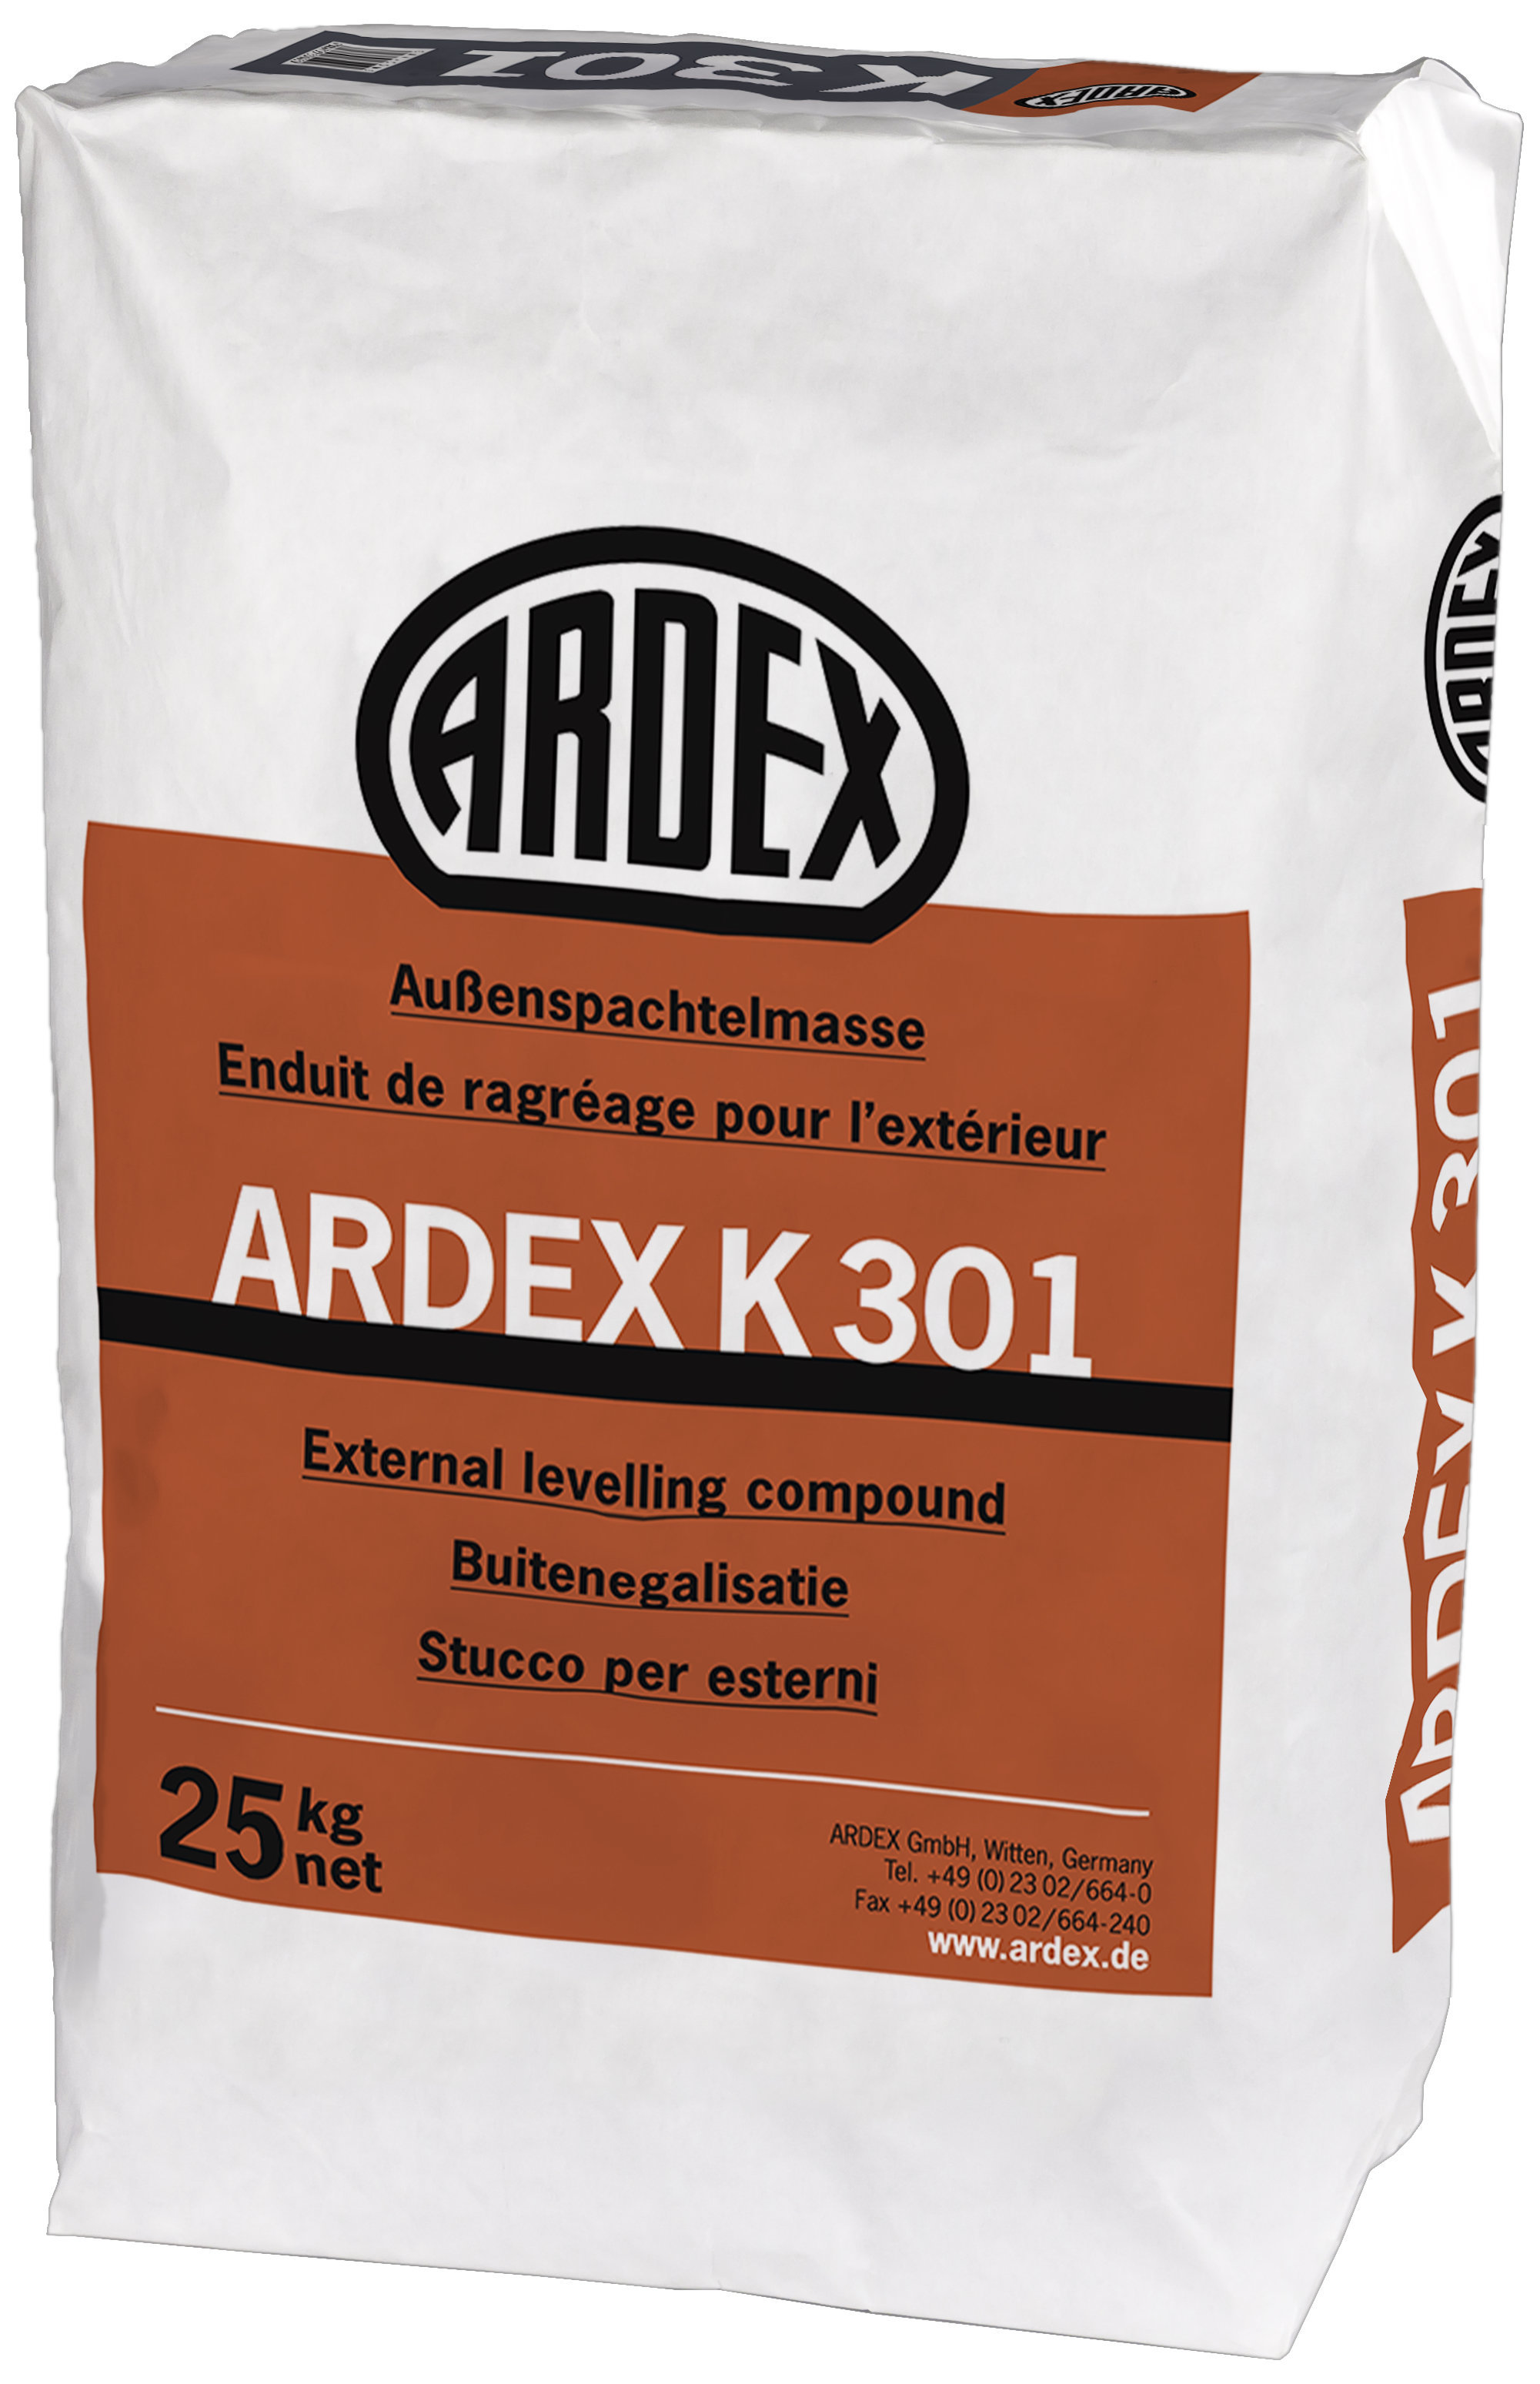 ARDEX K301 Aussenspachtelmasse